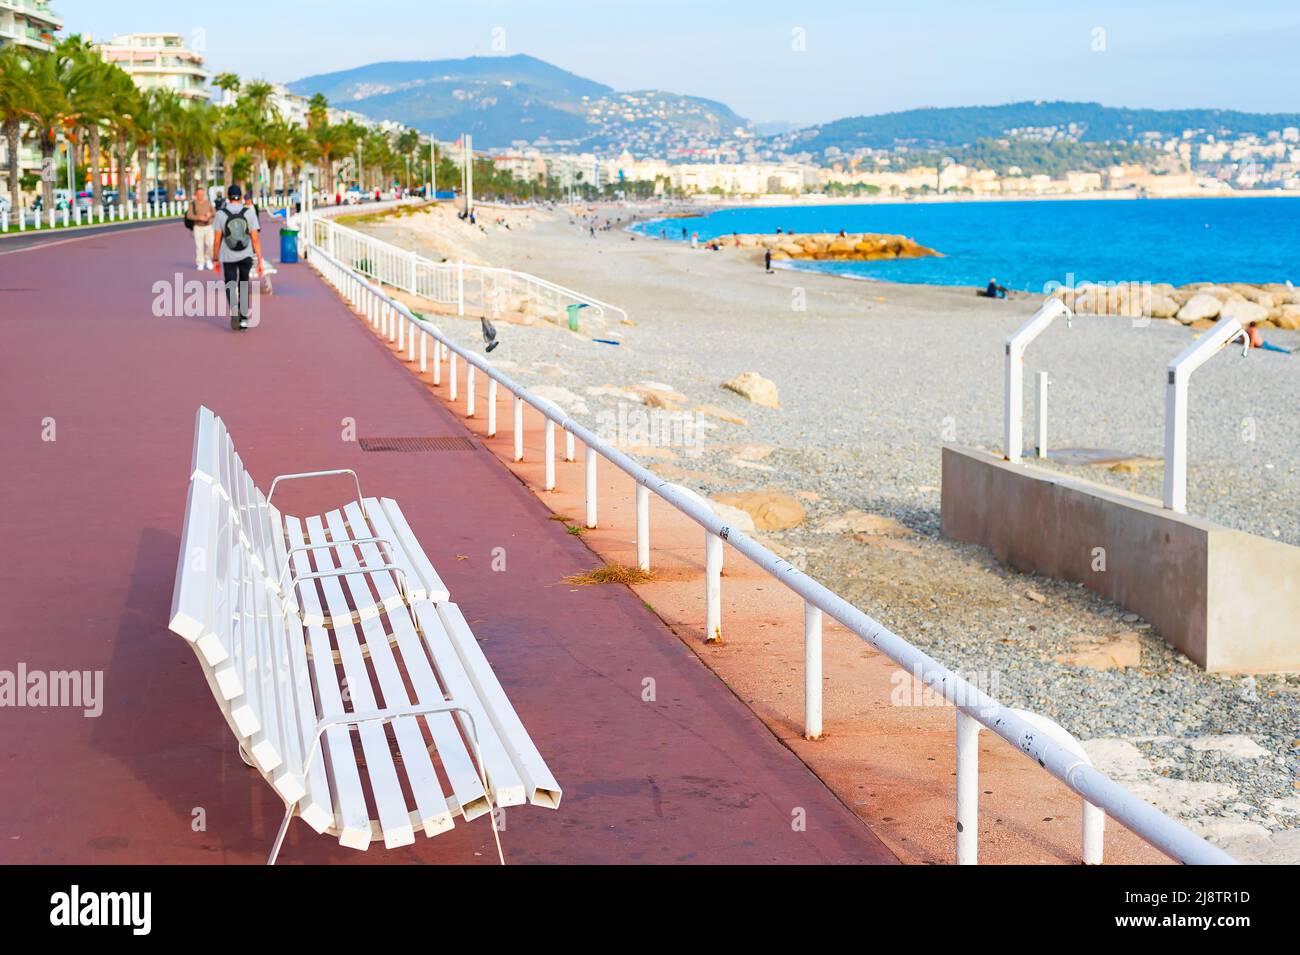 Banc blanc sur la belle vue sur le remblai, les personnes marchant, le paysage méditerranéen et la plage, France Banque D'Images